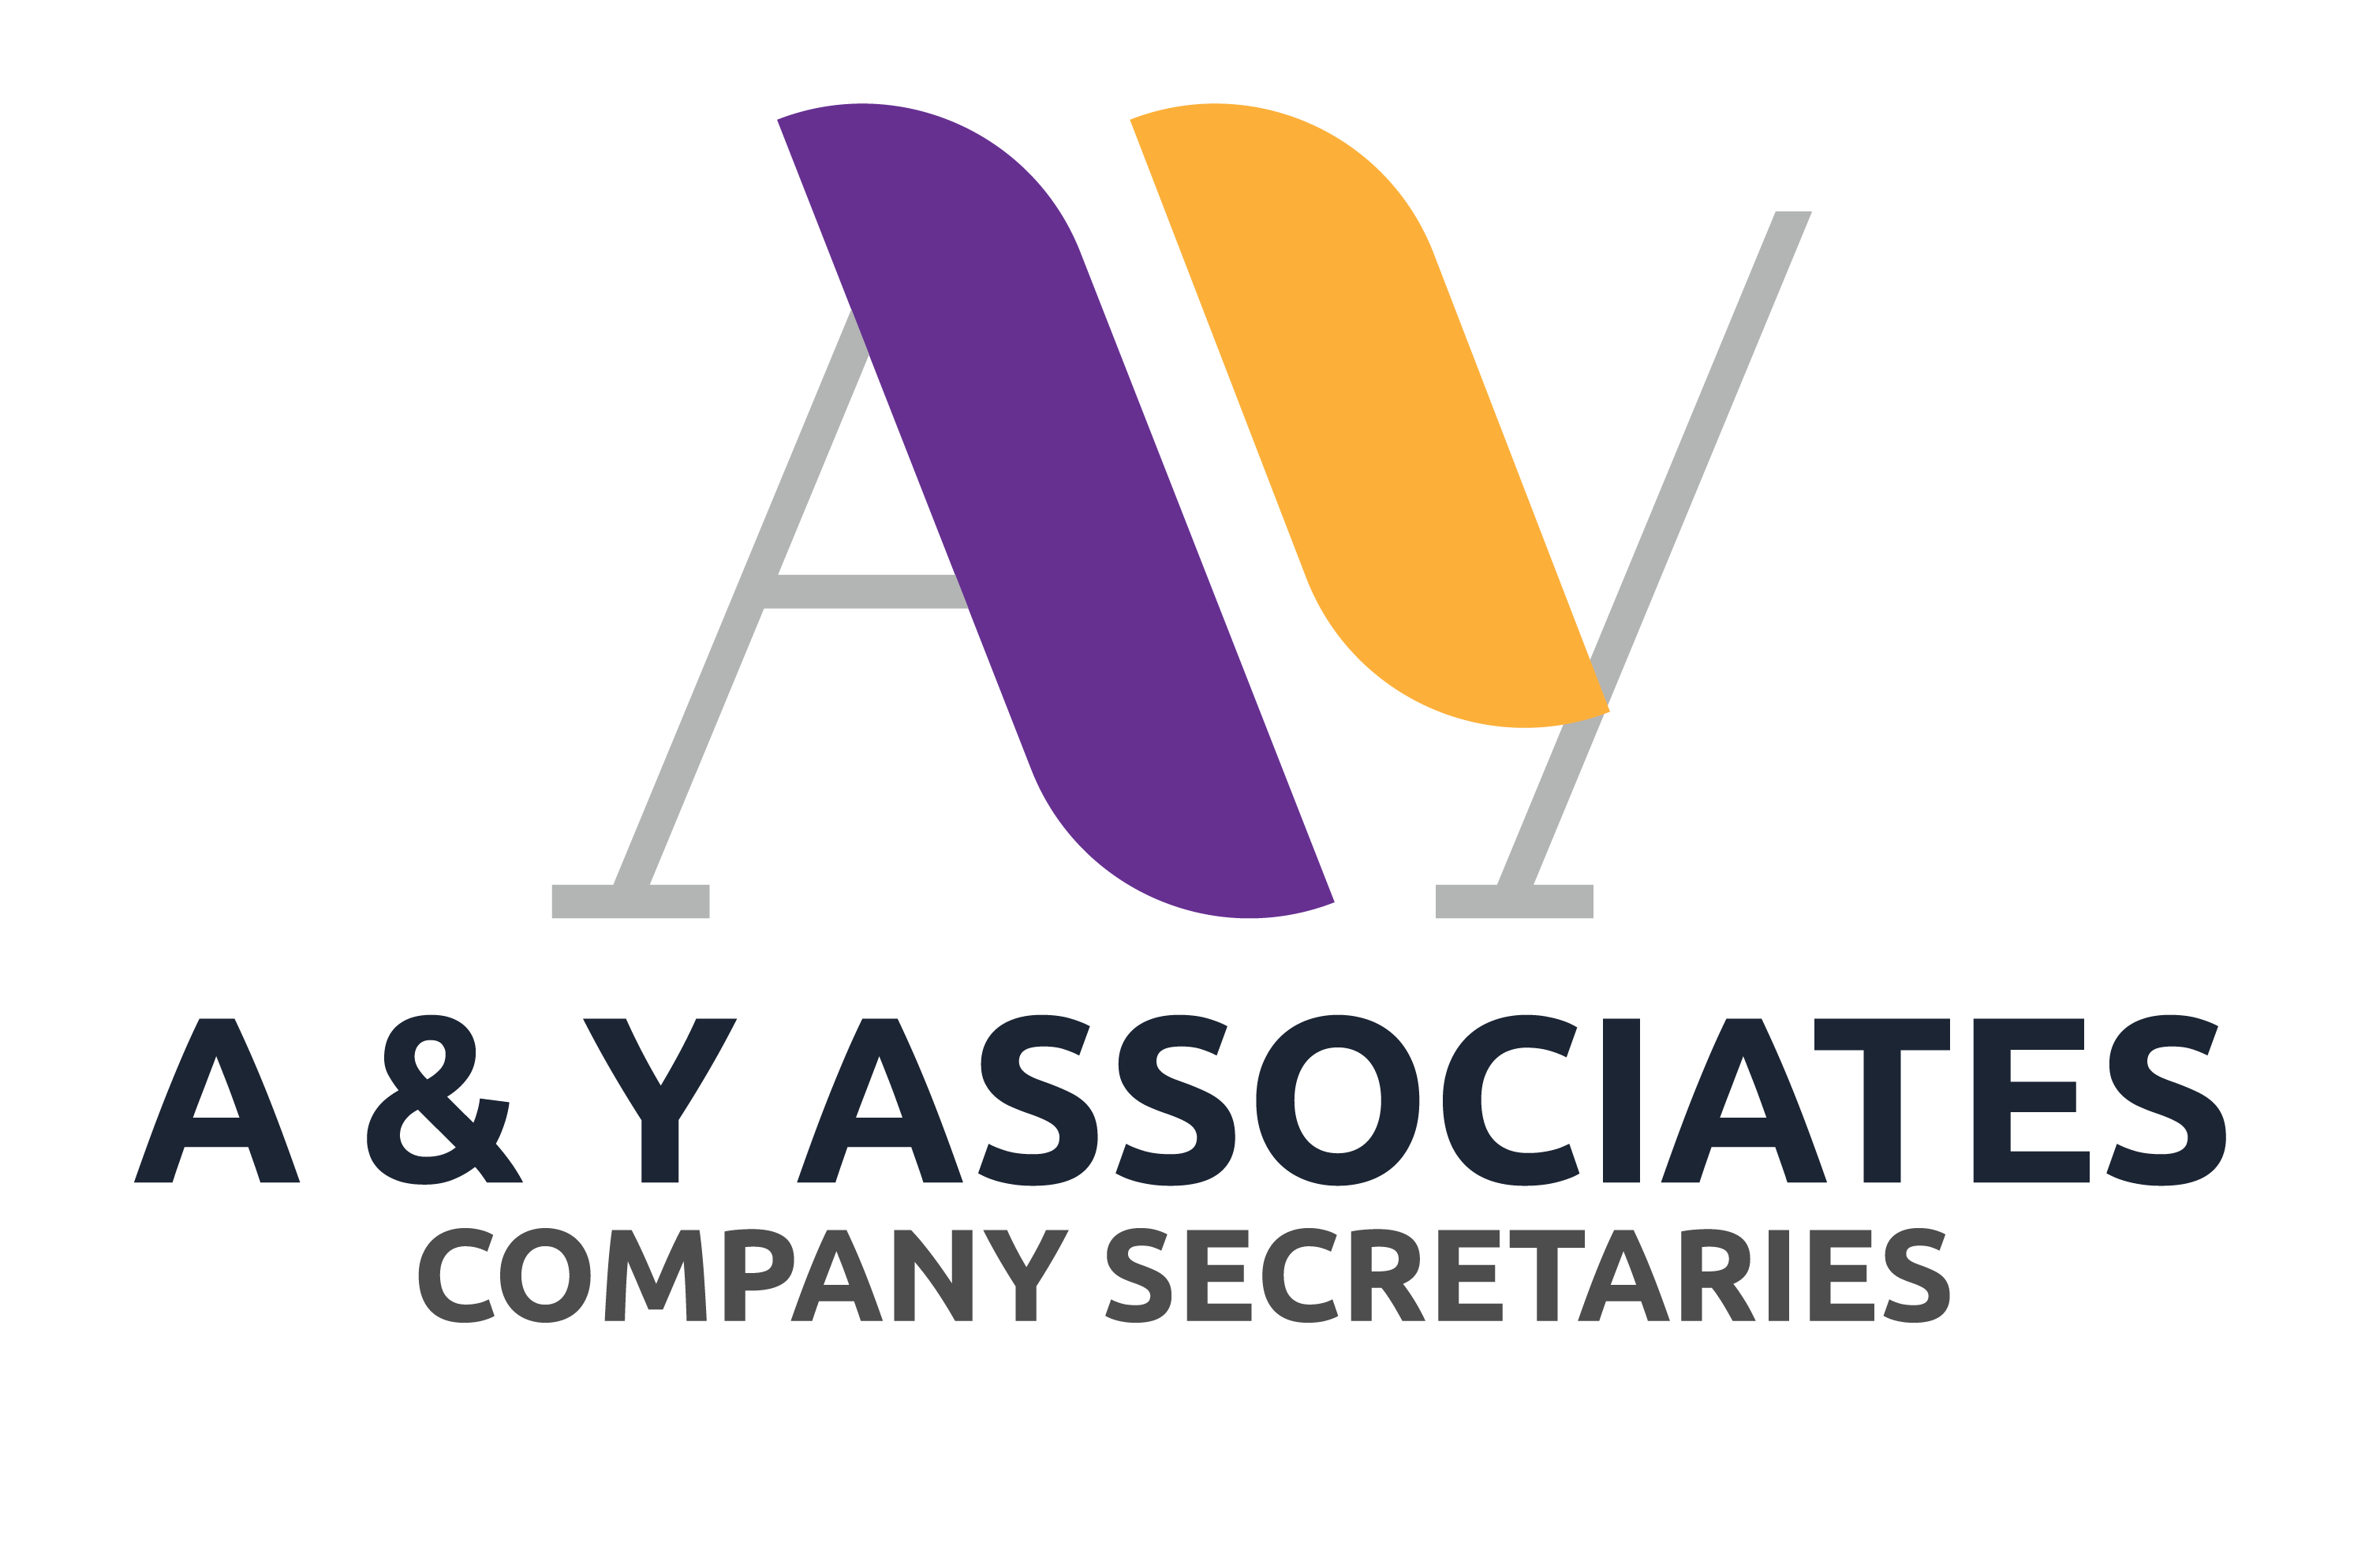 A & Y Associates